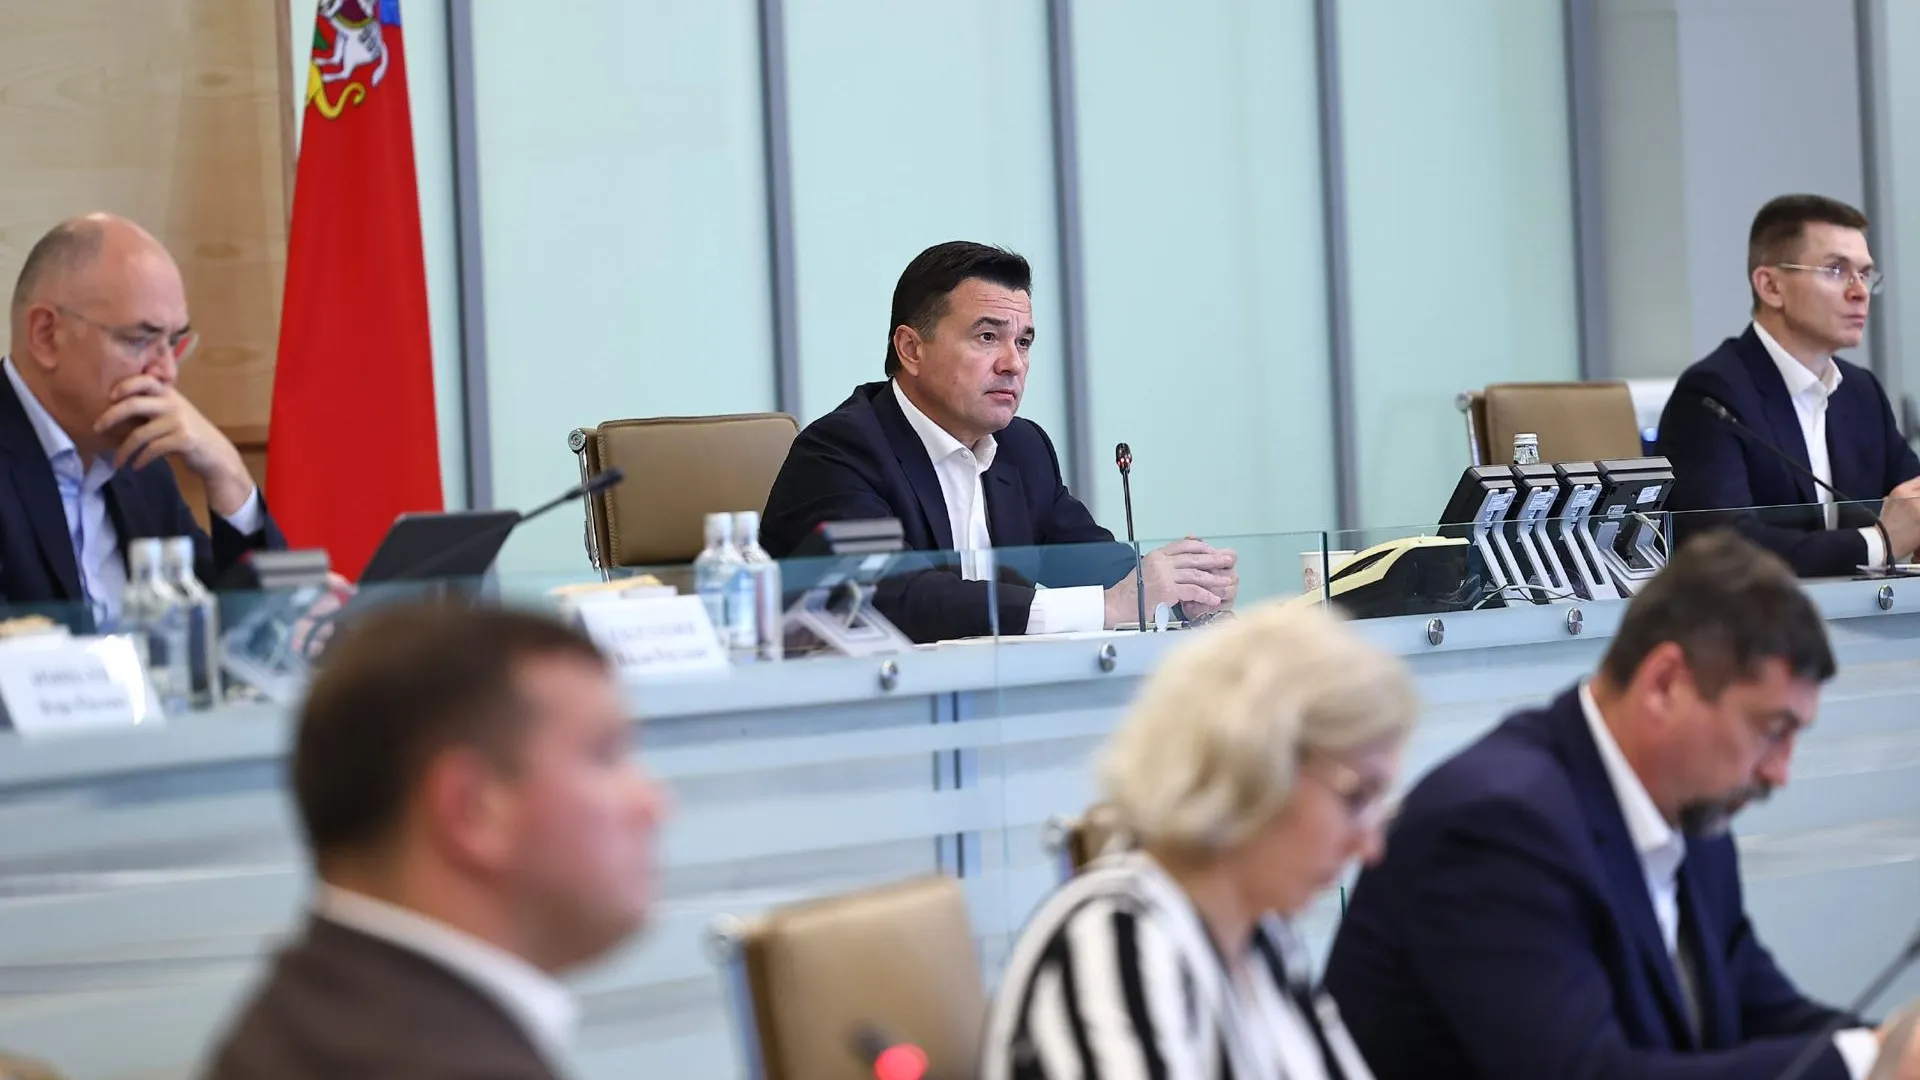 Губернатор Подмосковья рассказал про залог успеха в командной работе областного правительства